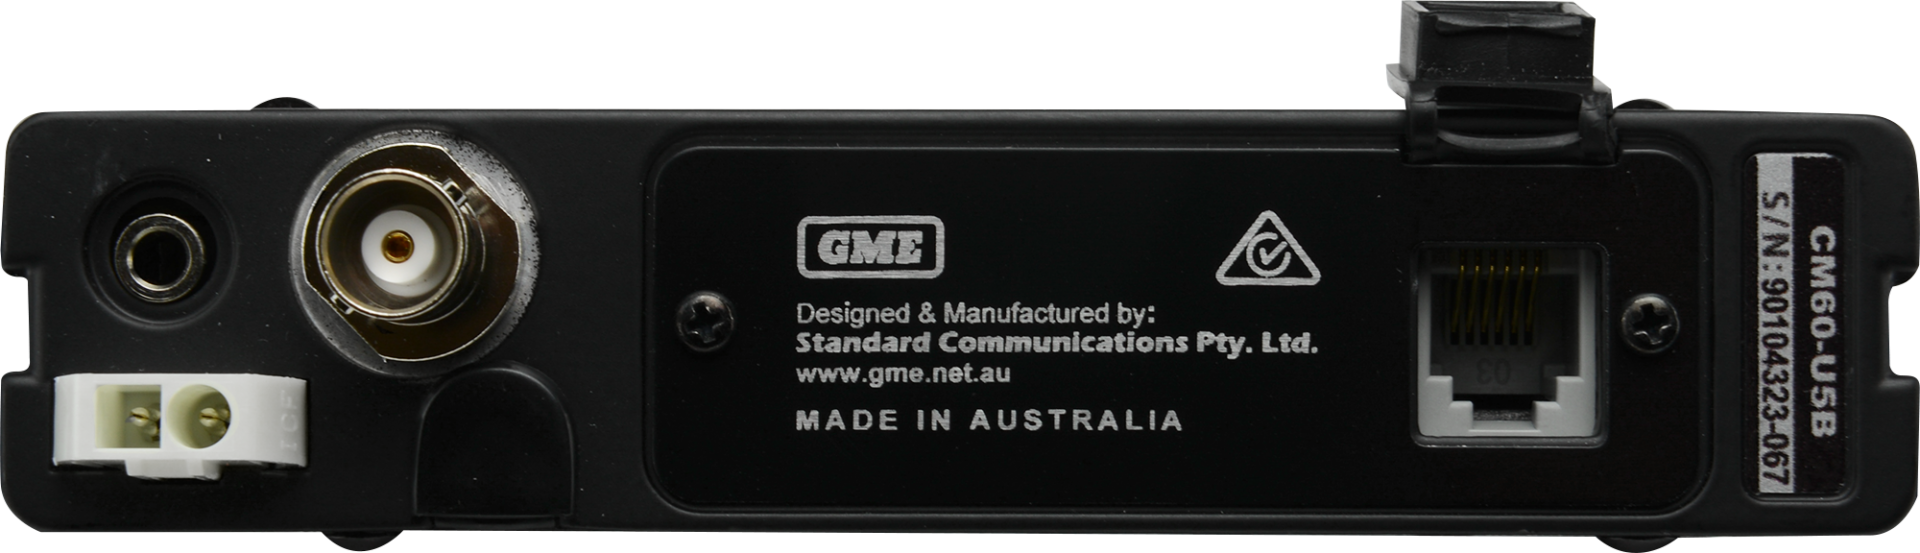 afdeling verjaardag tekst CM60-U5L - 5 watt Mobile Local Control UHF Radio | GME